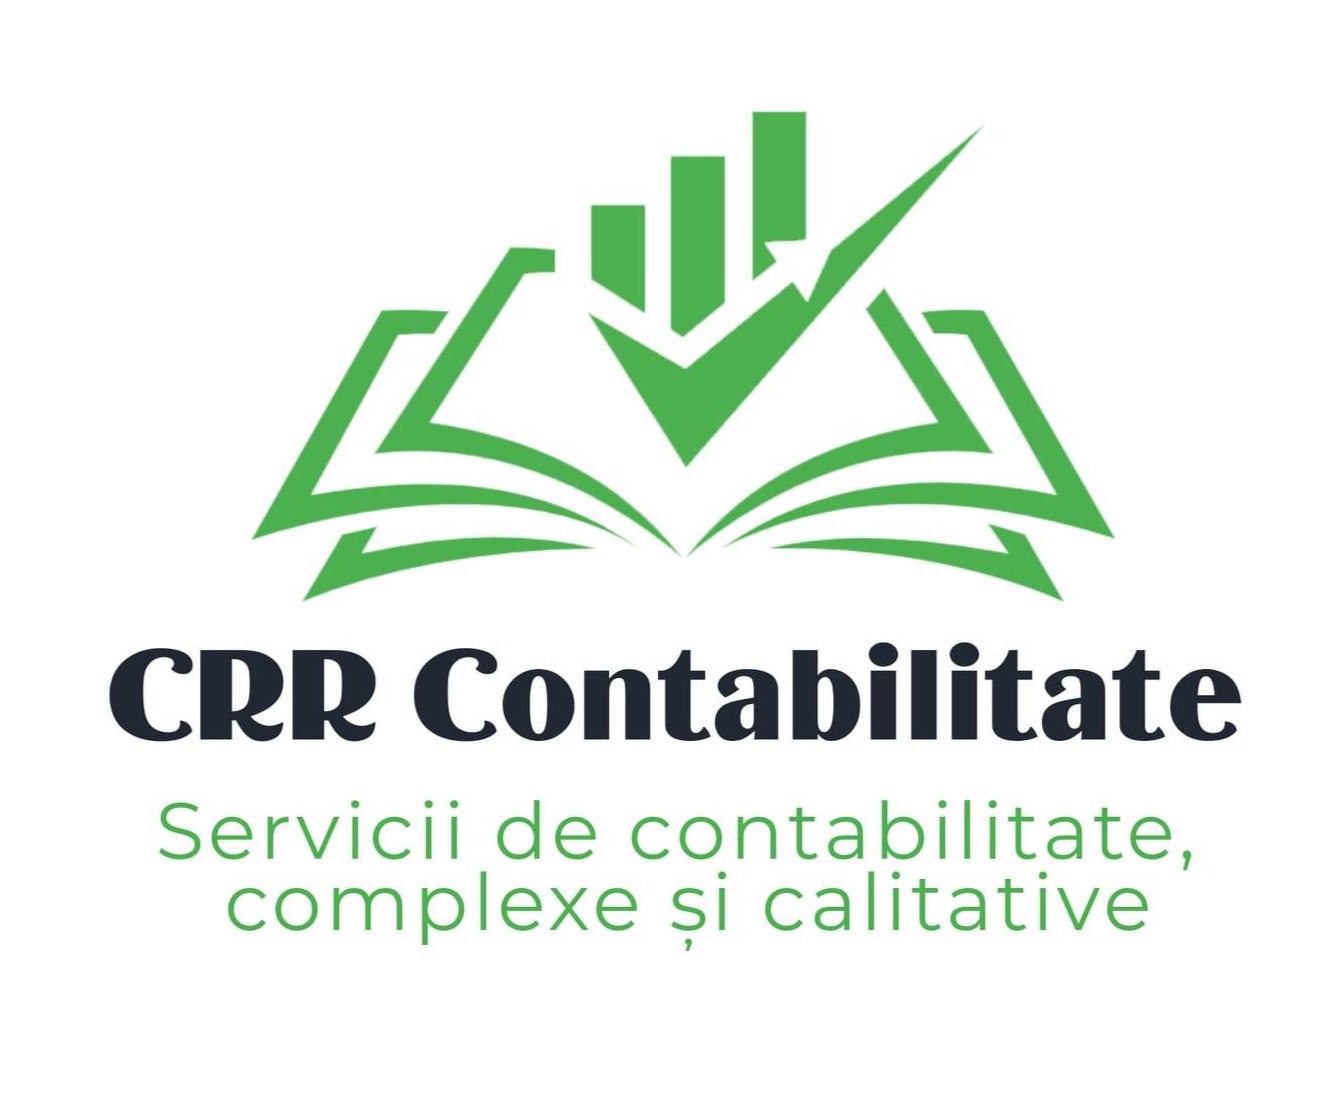 CRR Contabilitate